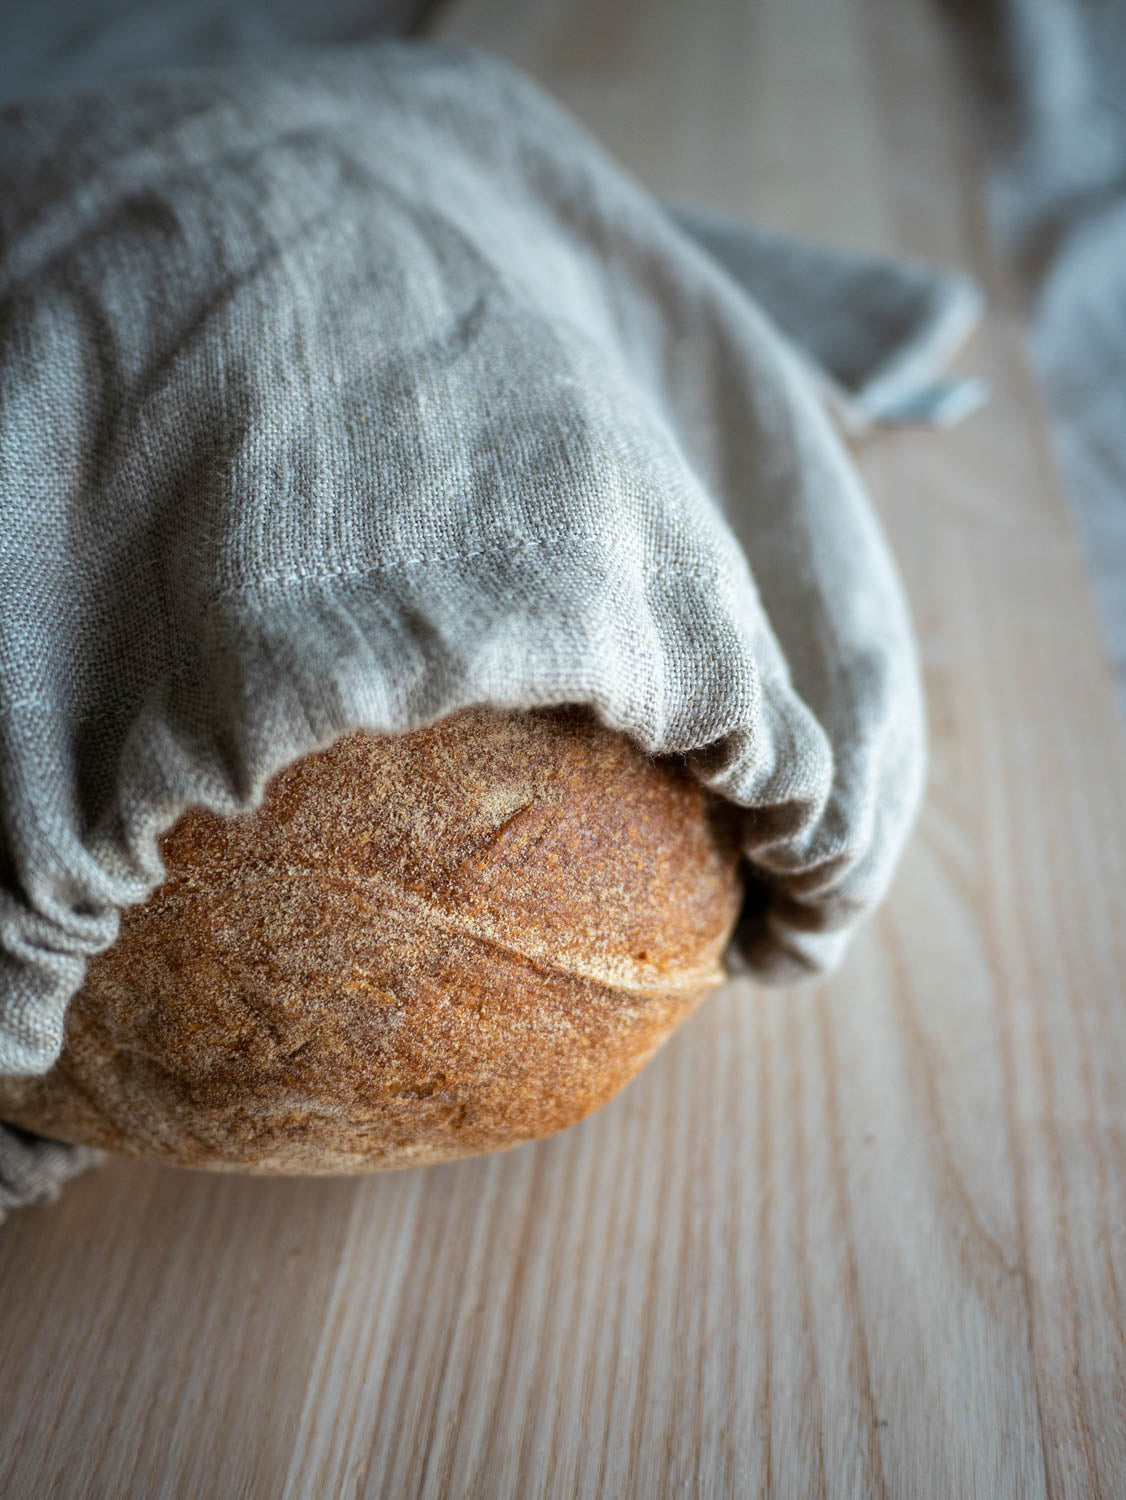 Brödpåse av naturell linnetyg där ett surdegsbröd skymtar i öppningen.